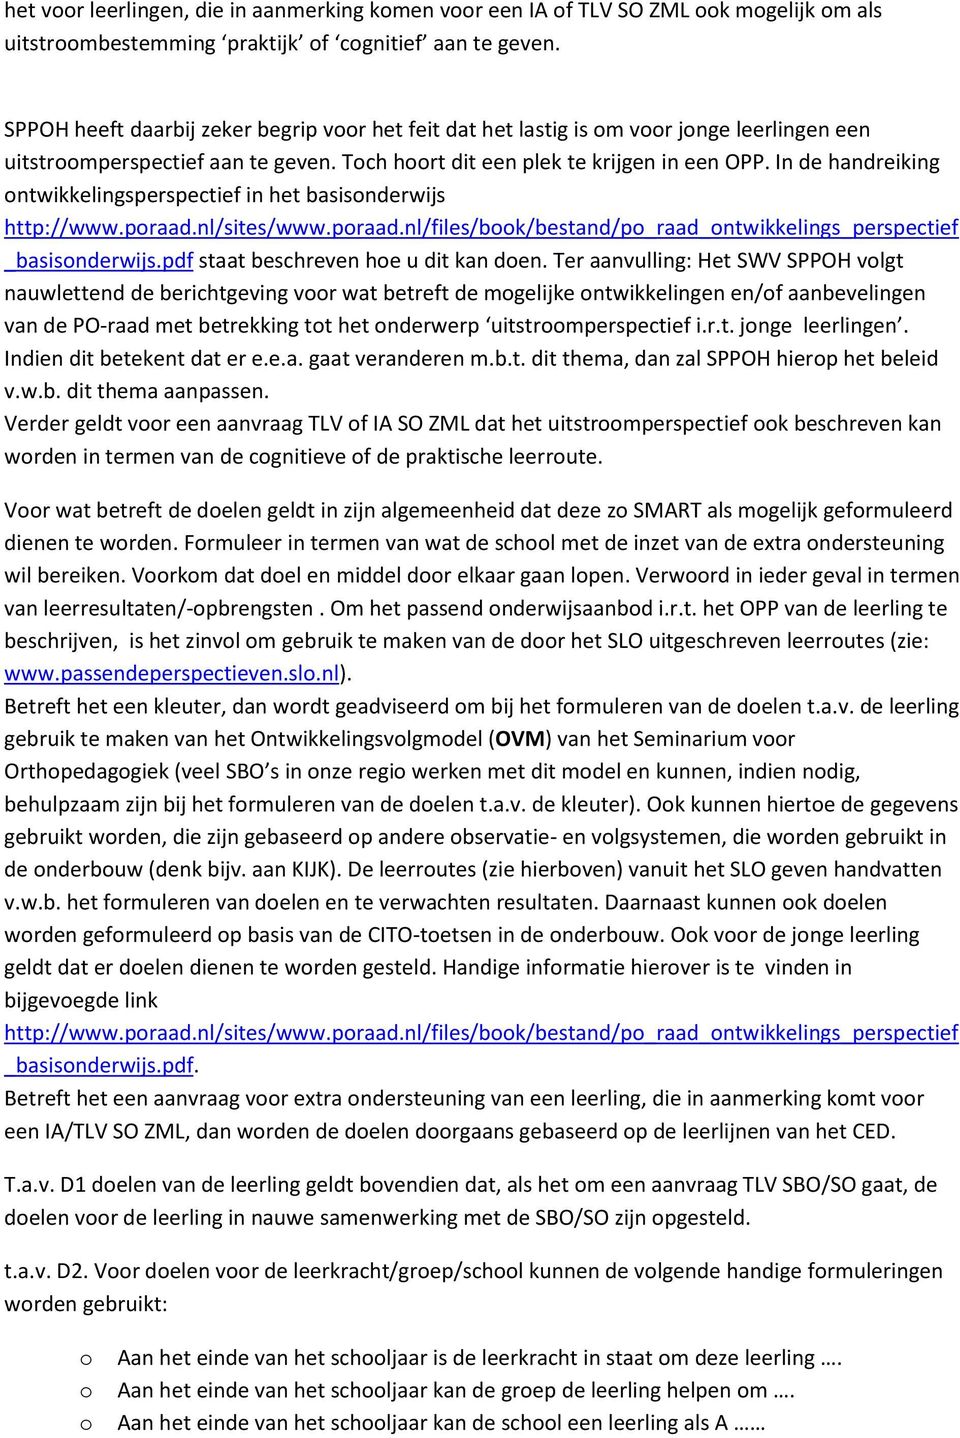 In de handreiking ontwikkelingsperspectief in het basisonderwijs http://www.poraad.nl/sites/www.poraad.nl/files/book/bestand/po_raad_ontwikkelings_perspectief _basisonderwijs.